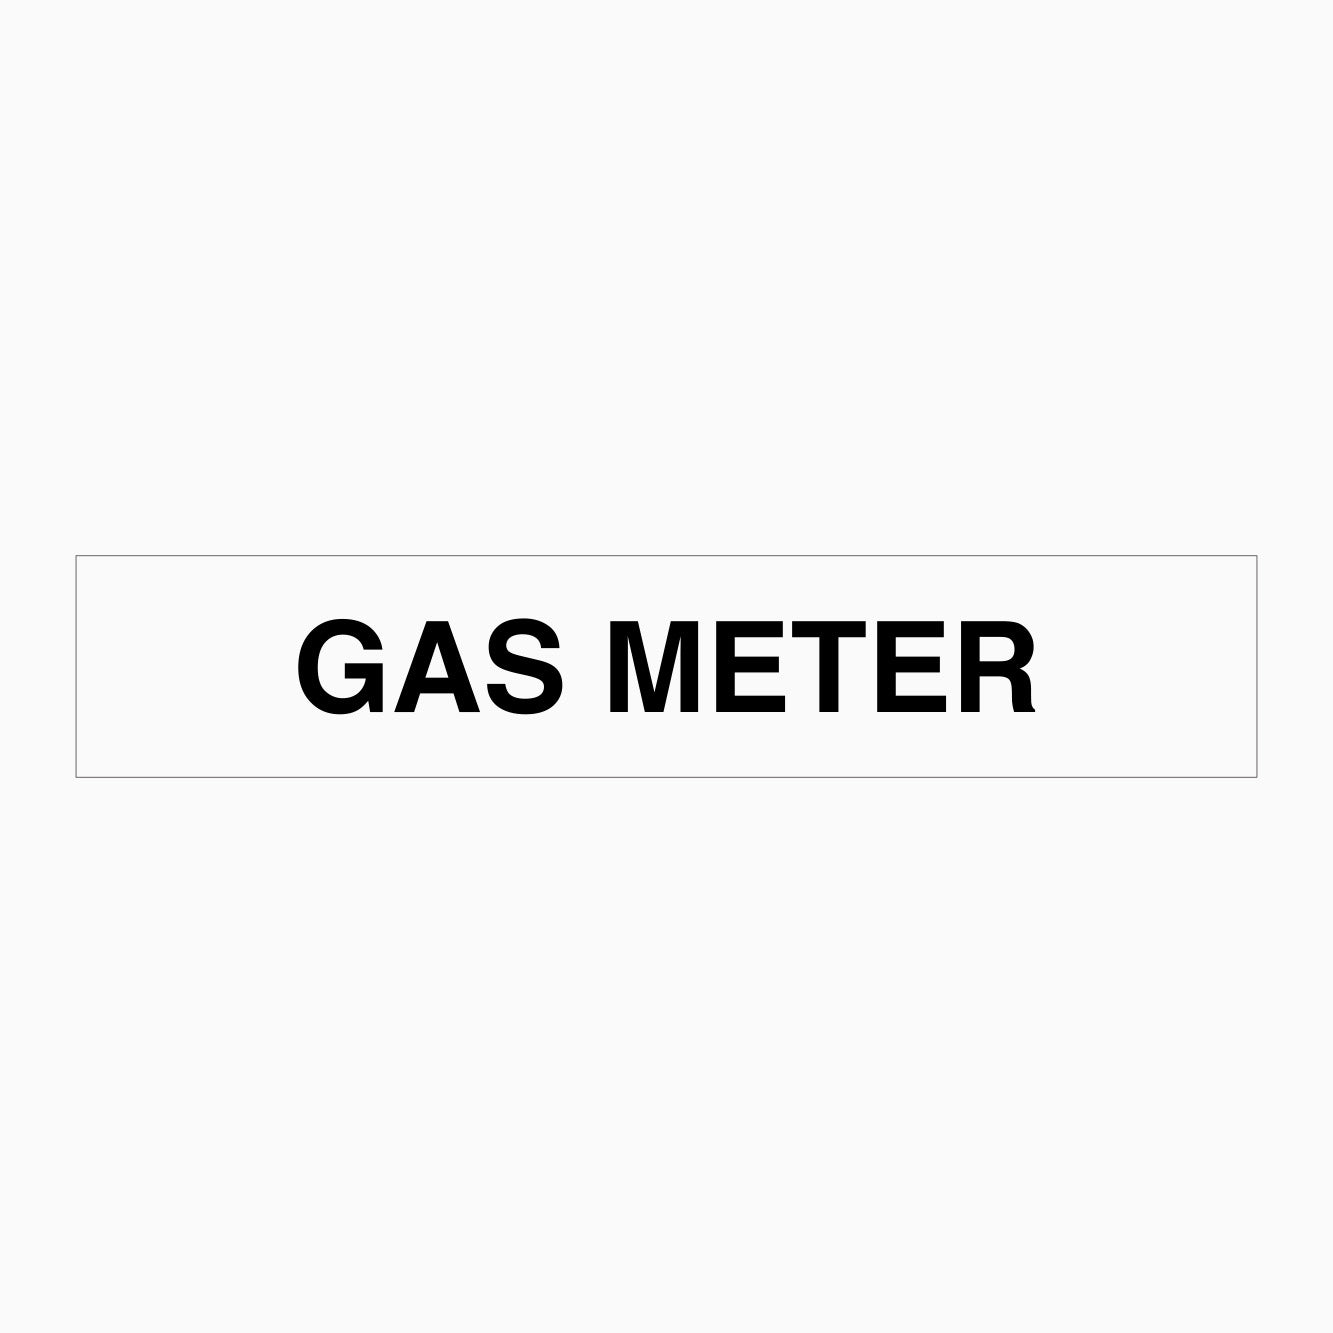 GAS METERS SIGN